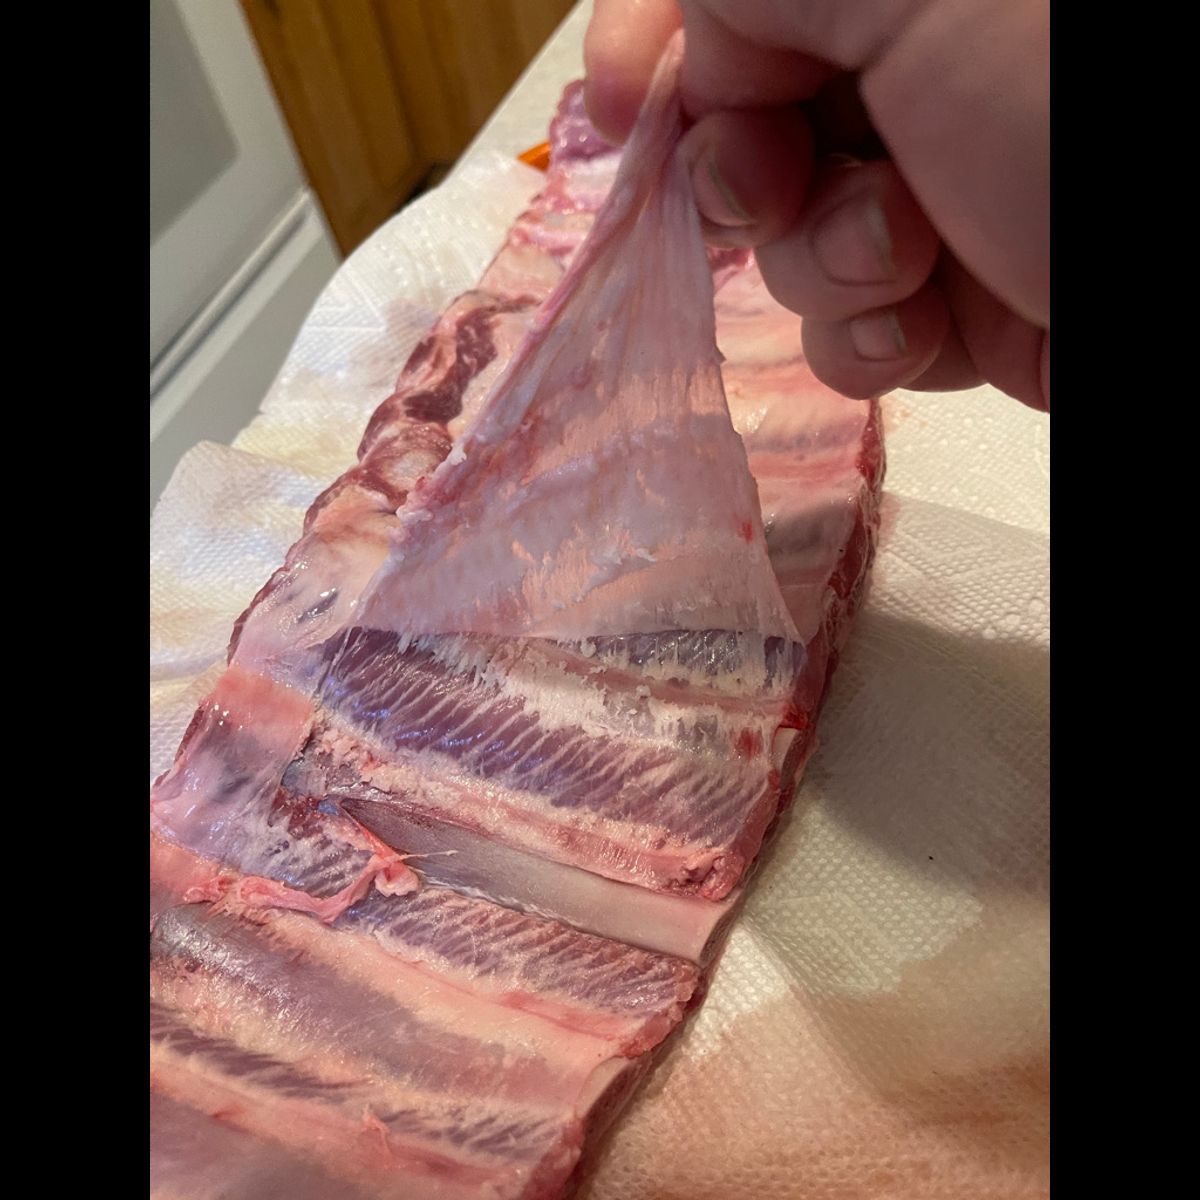 Removing pork rib membrane